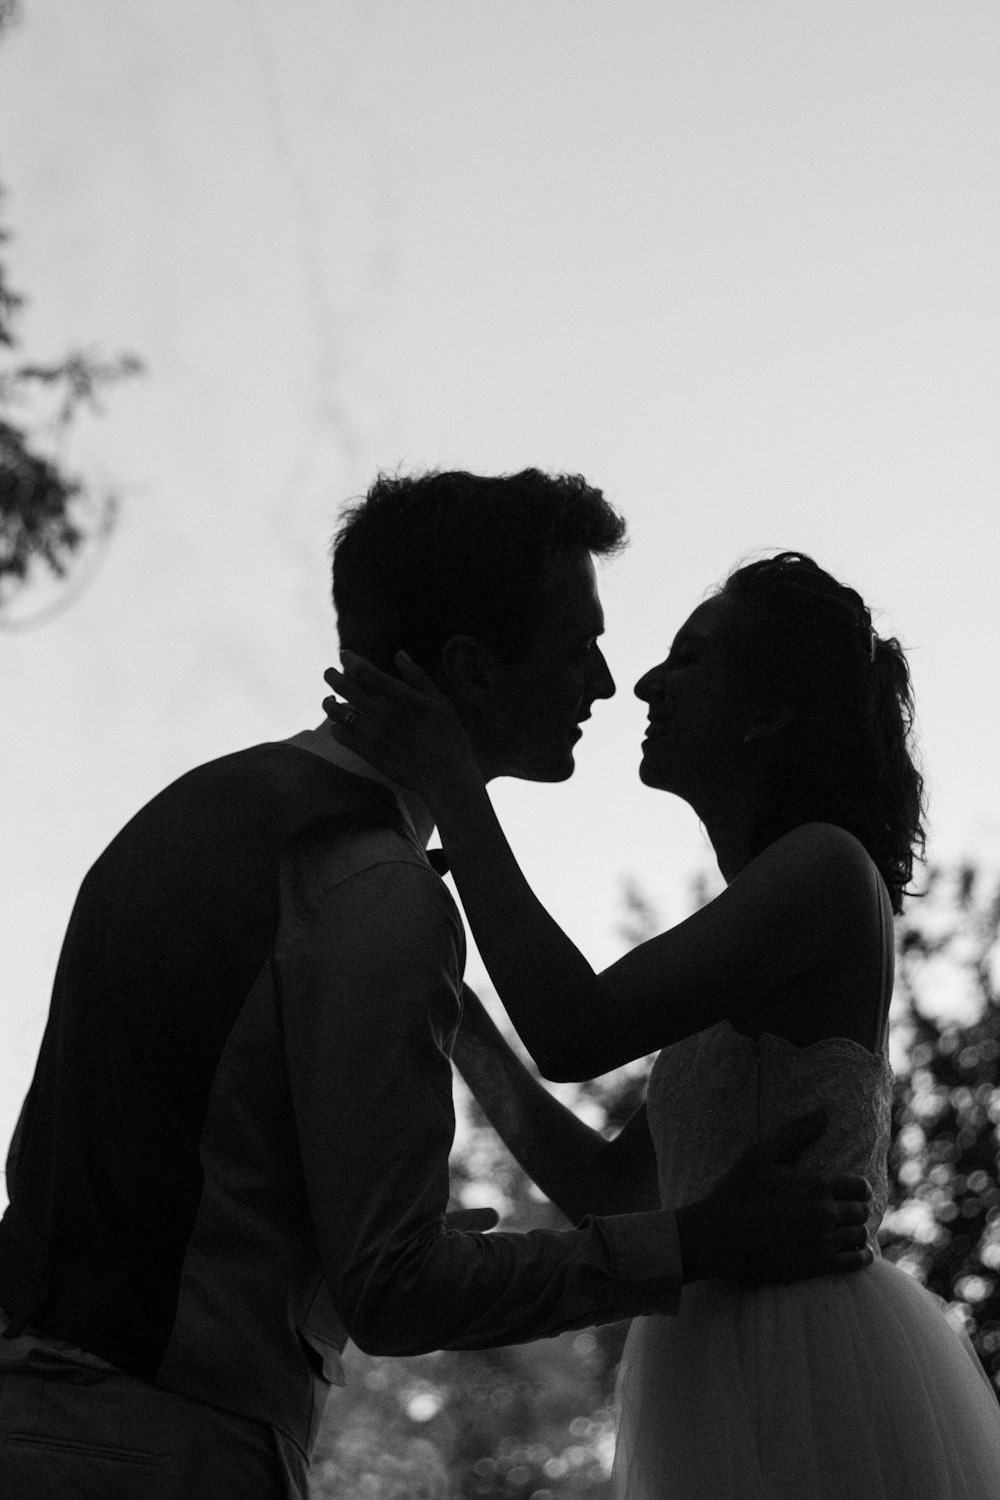 photo en niveaux de gris de silhouette d’un homme et d’une femme tentant de s’embrasser